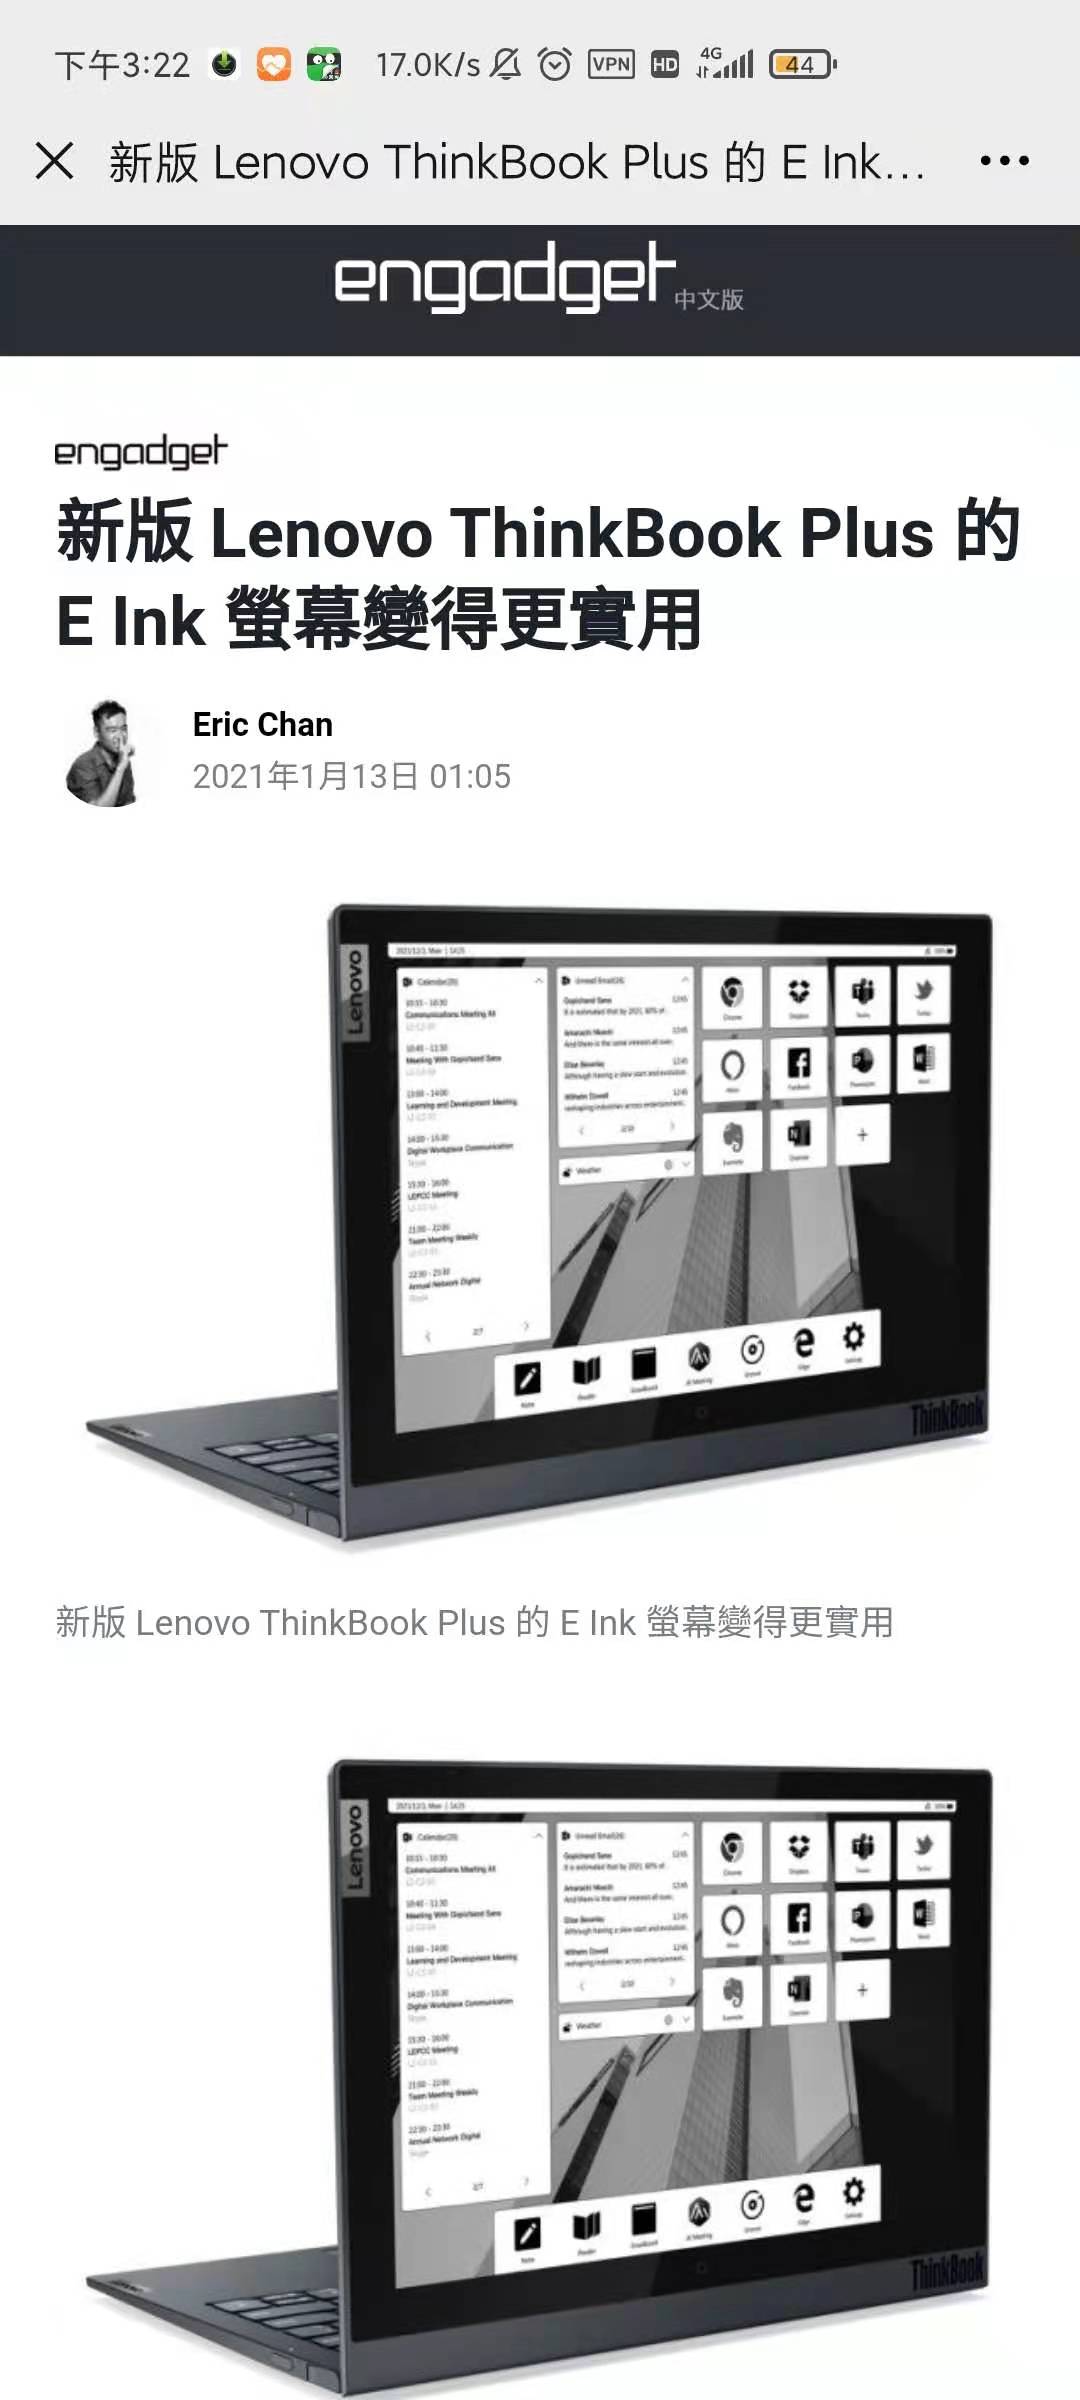 新版Lenvov Thinkbook Plus的E Ink墨水屏增大到12寸,有更多新功用